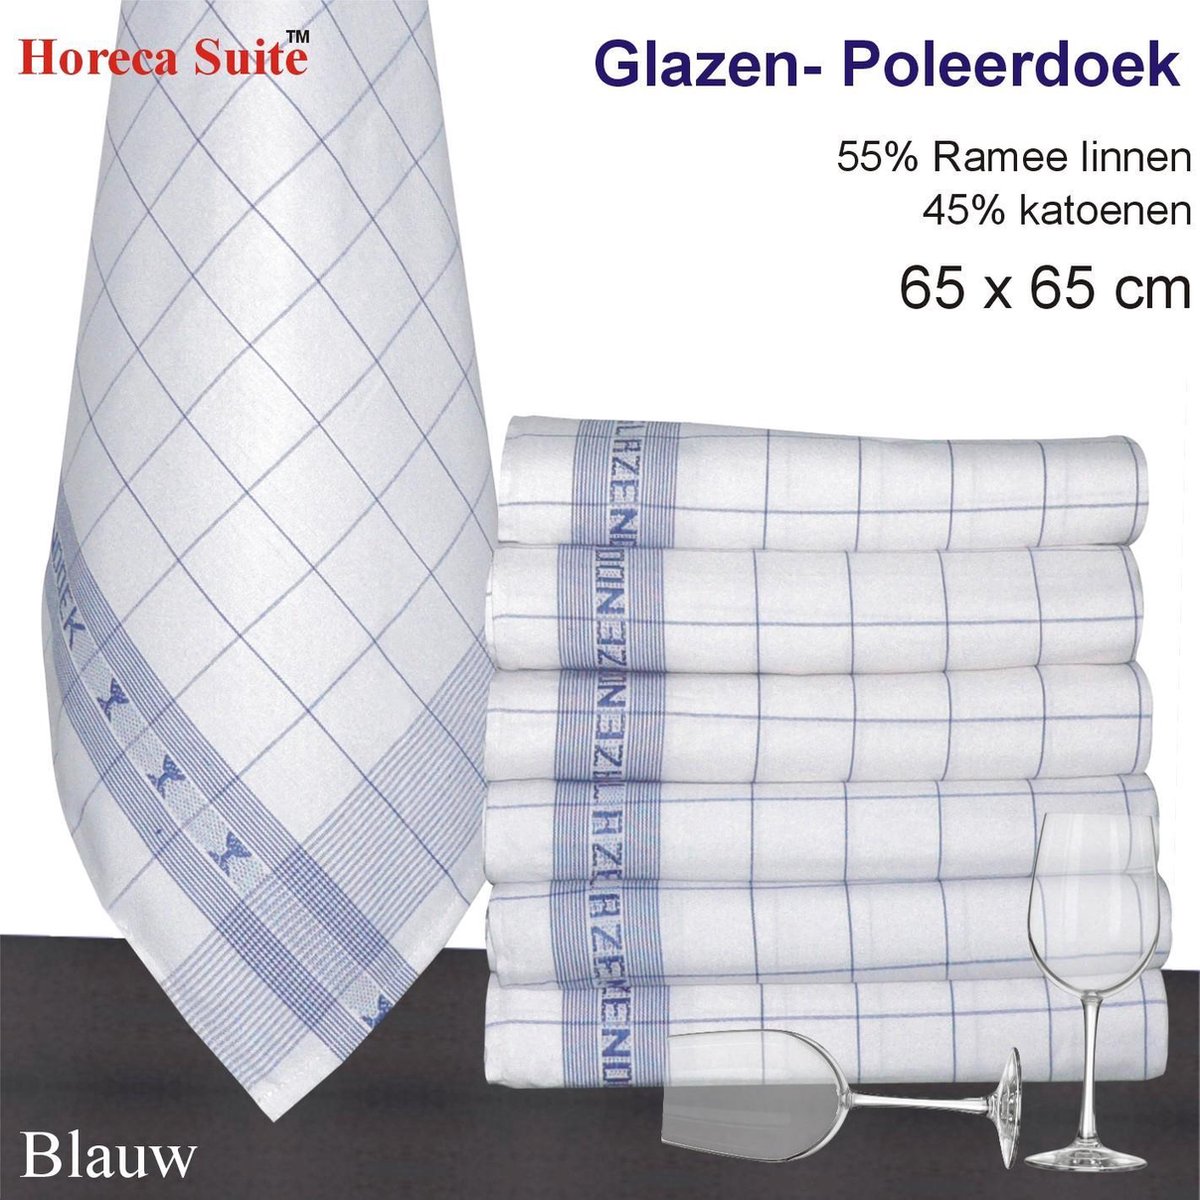 Homéé® Glazendoek - Poleerdoeken jacquard Blauw ruiten 65x65cm - set van 6 stuks - 50% Ramee linnen 50% katoen